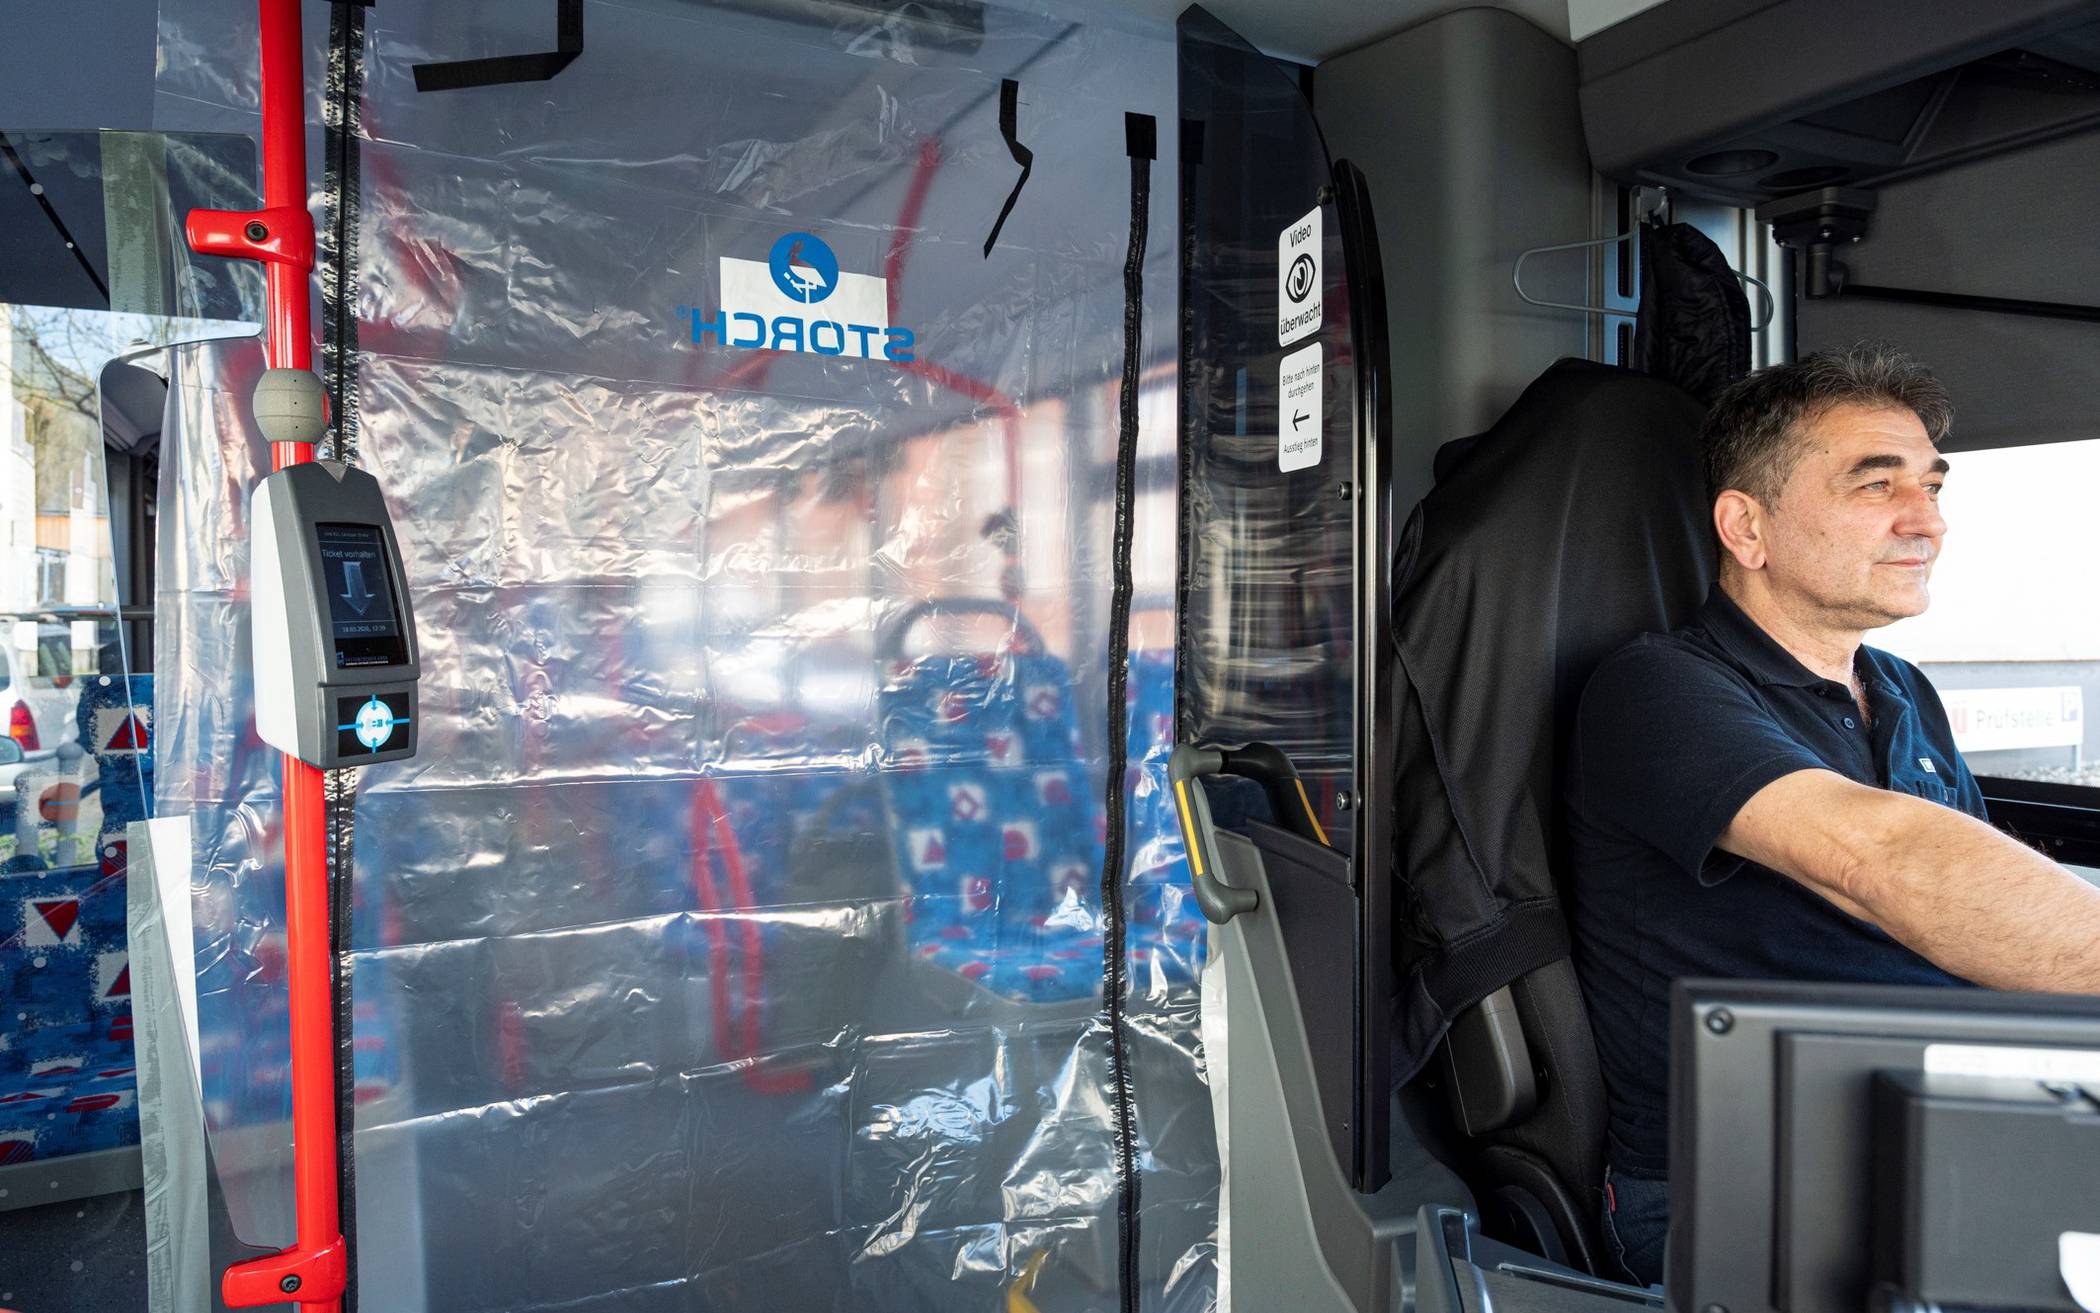  Busfahrer Ernadin Skender in einem Bus der Wuppertaler Stadtwerke, die jetzt mit Plastiktüren ausgerüstet wurden. 